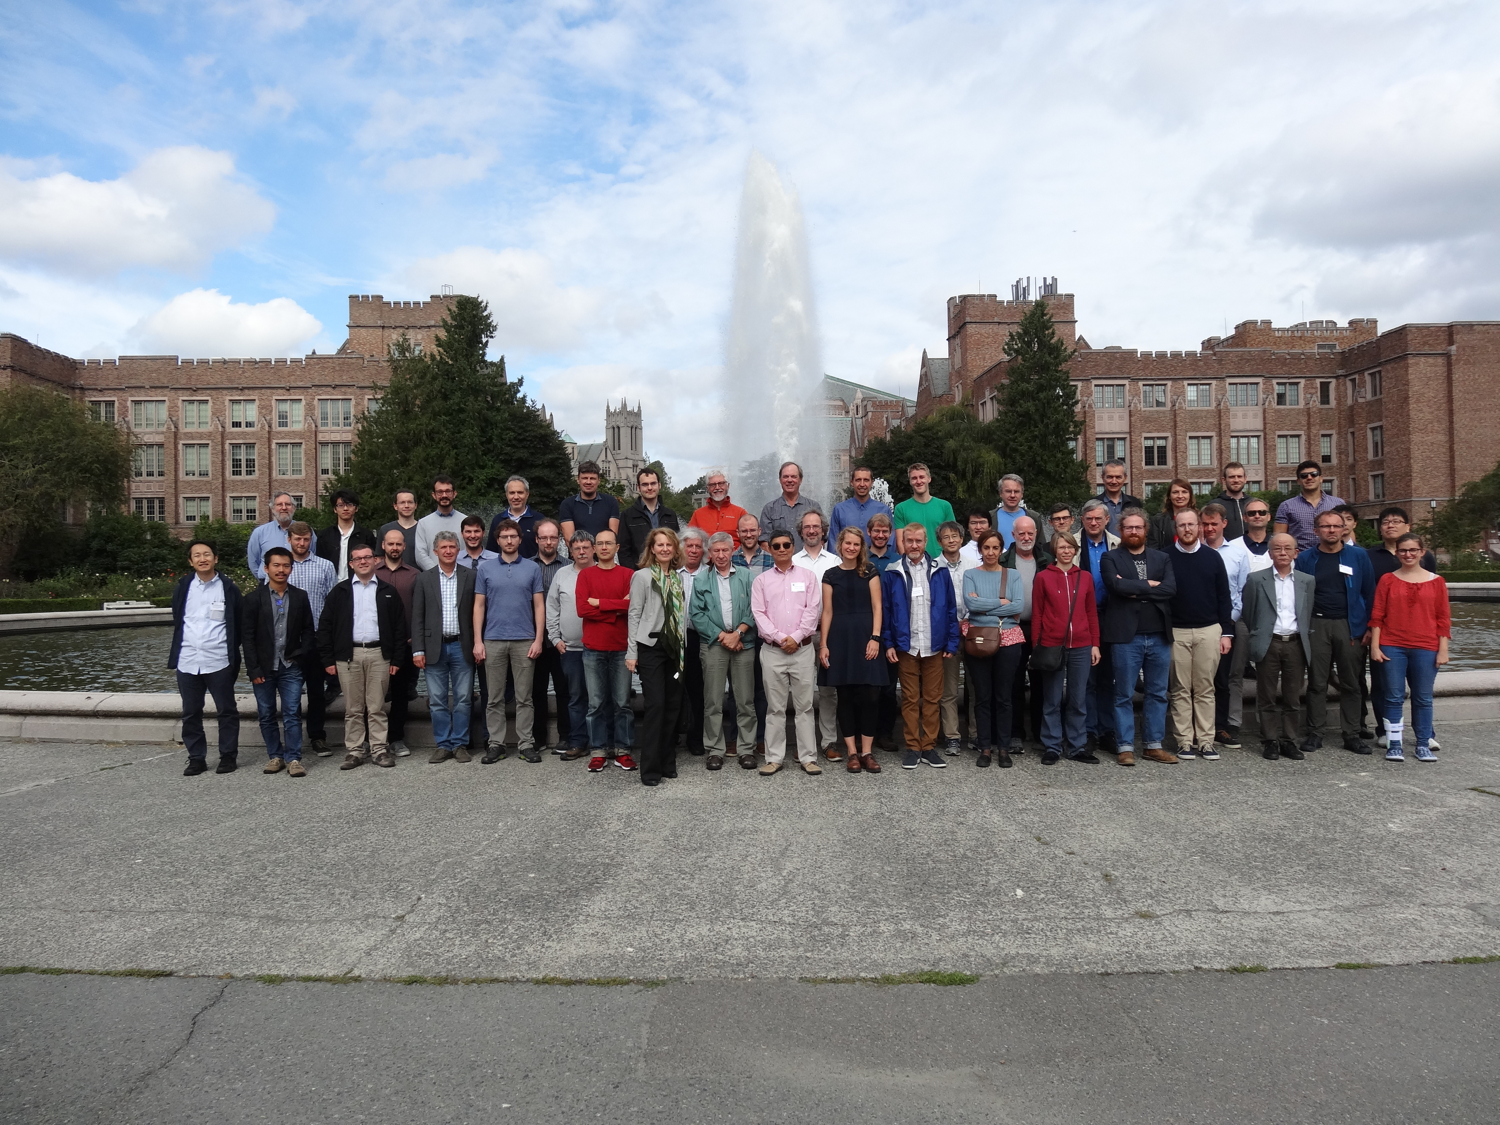 2019年9月9-13日にアメリカのワシントン大学原子核理論研究所で行われた研究会「Hadronic contributions to (g-2) μ」での集合写真。Steve Gottlieb 氏撮影。